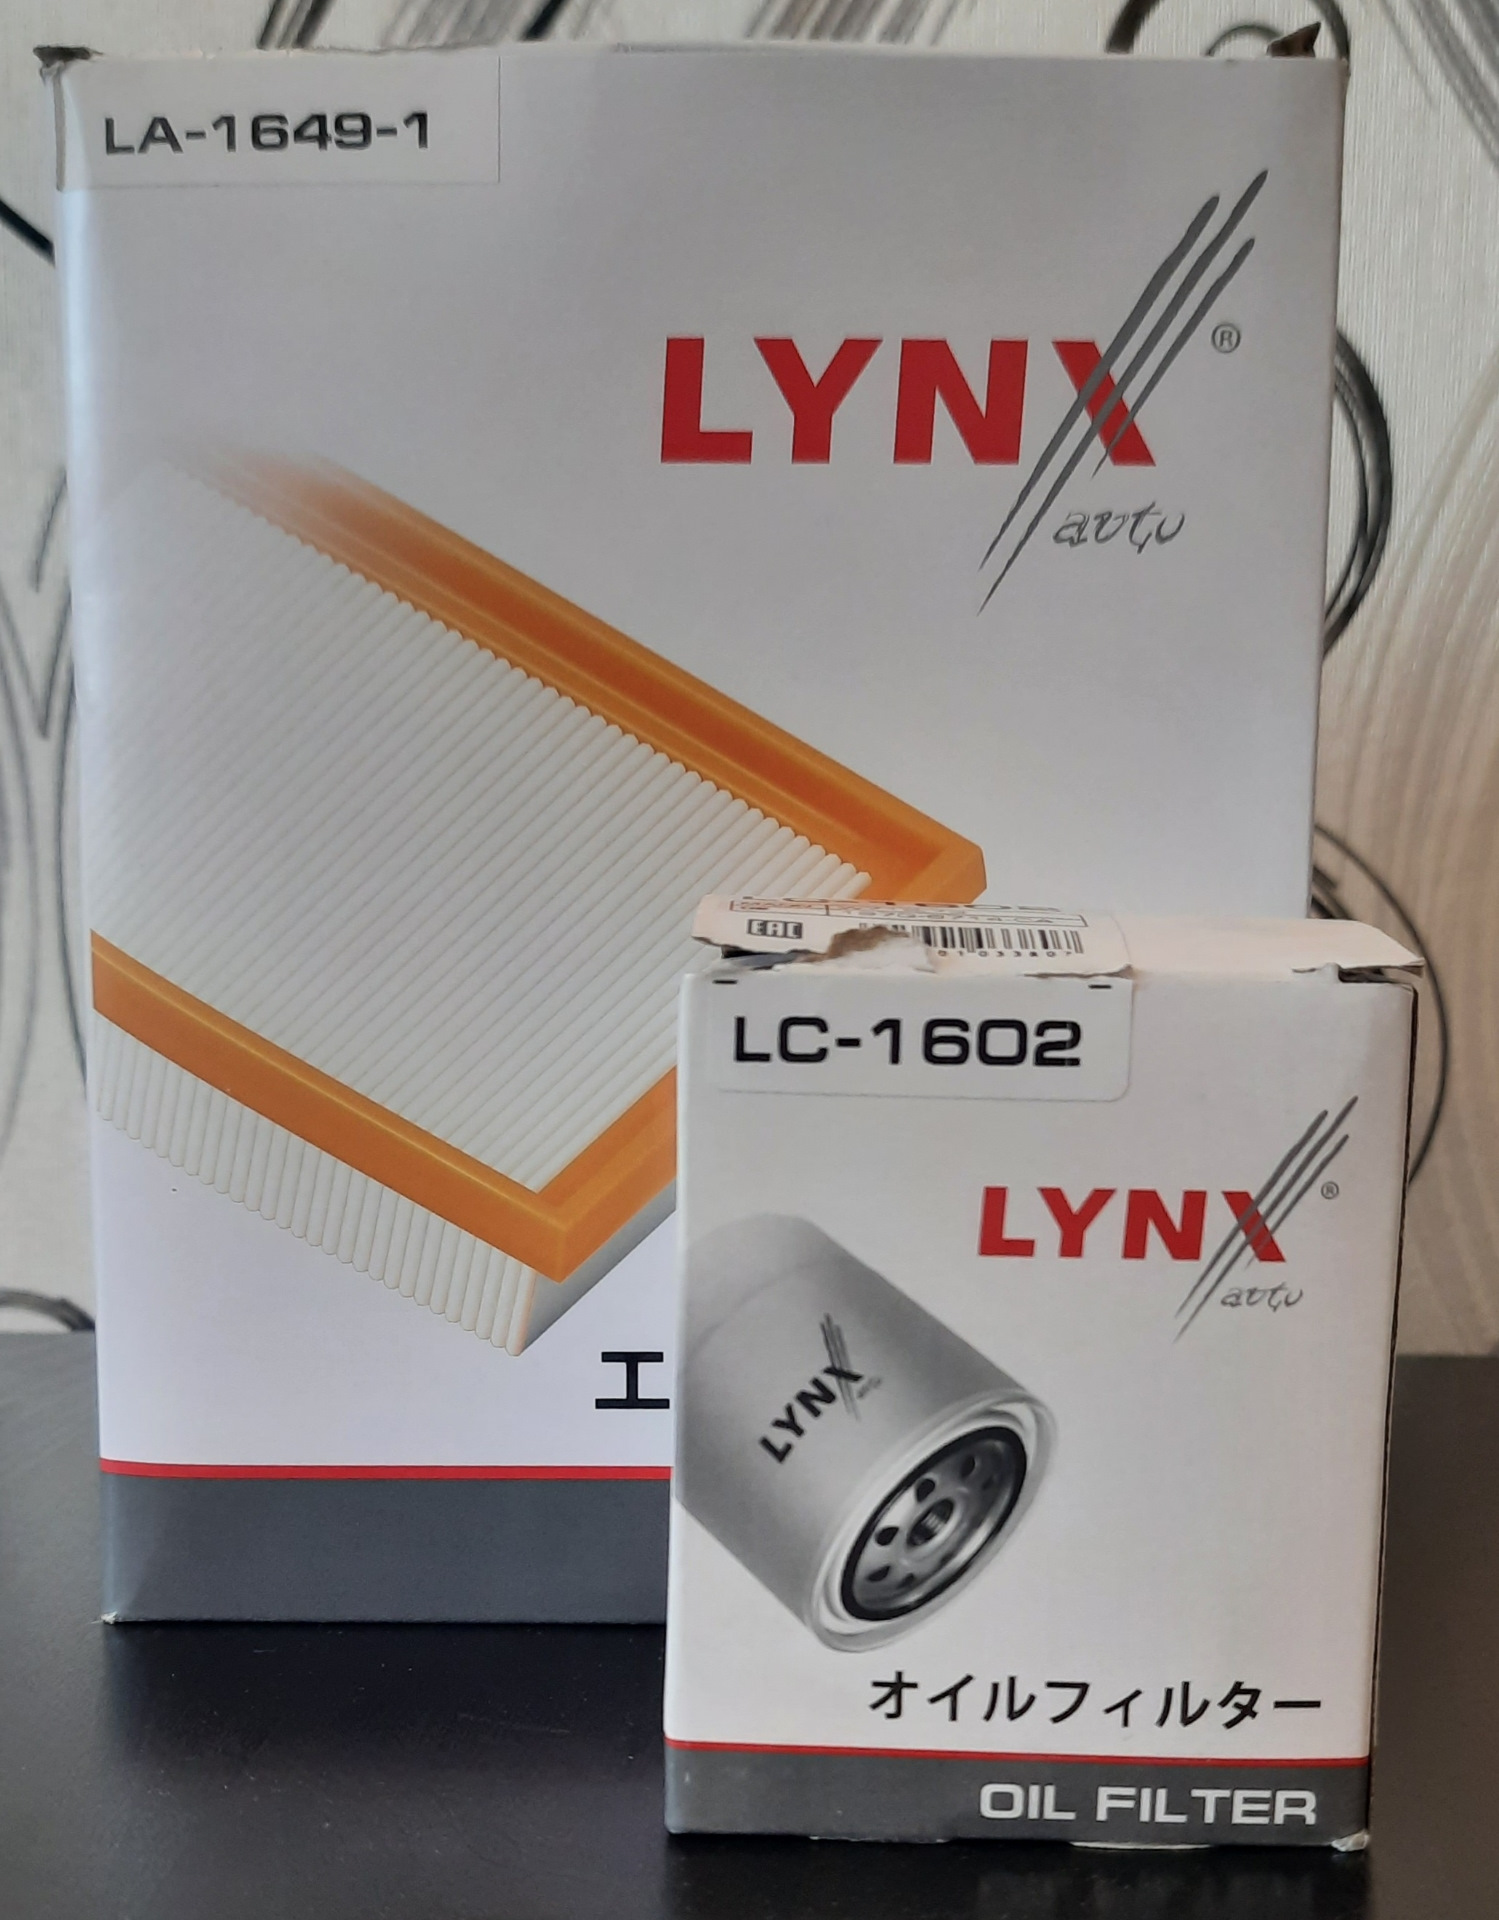 Производитель lynx отзывы. La16491. Vs1249 Lynx отзывы.